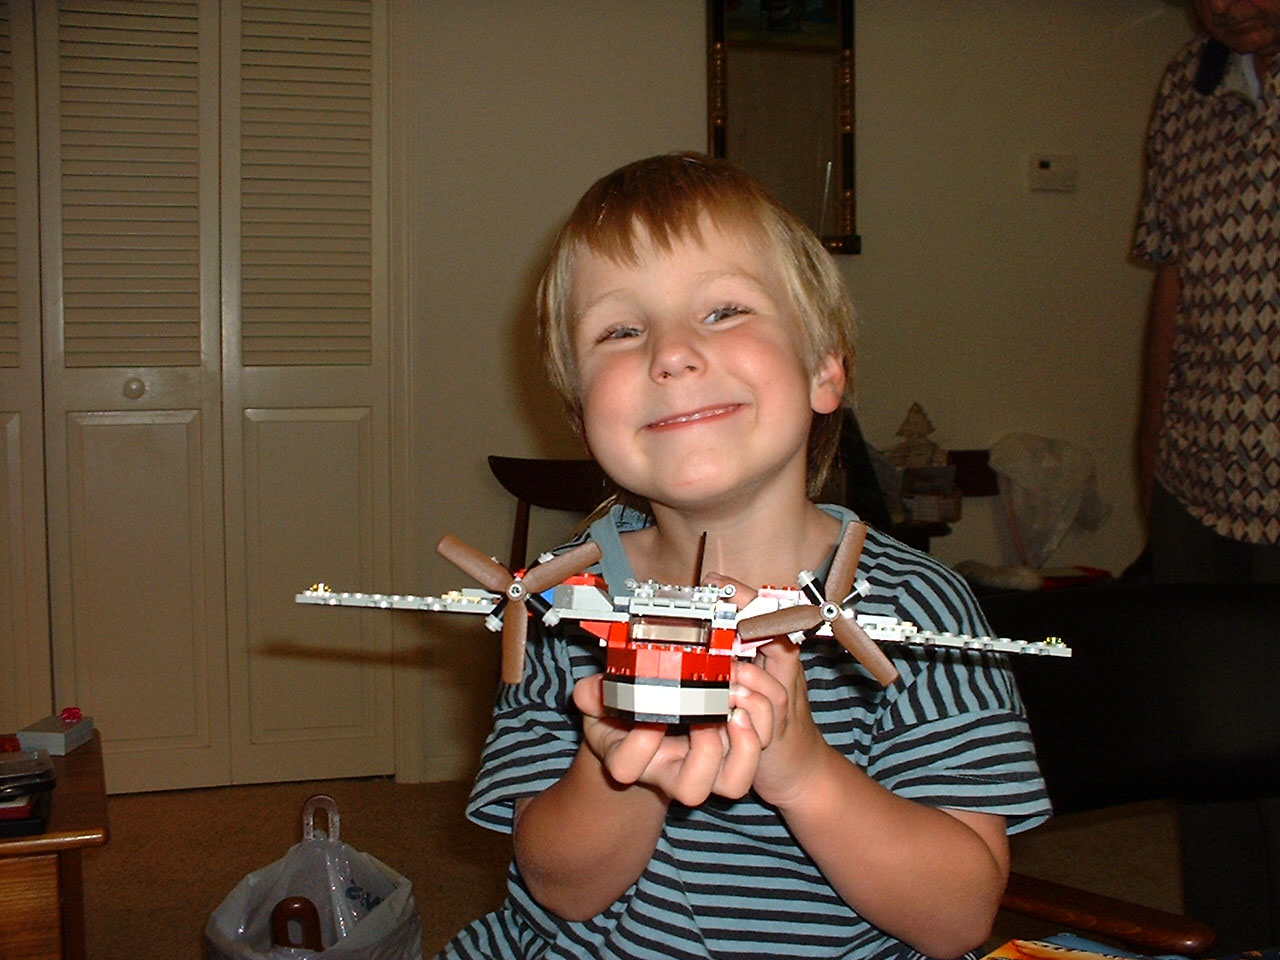 Evan Adams with Lego plane